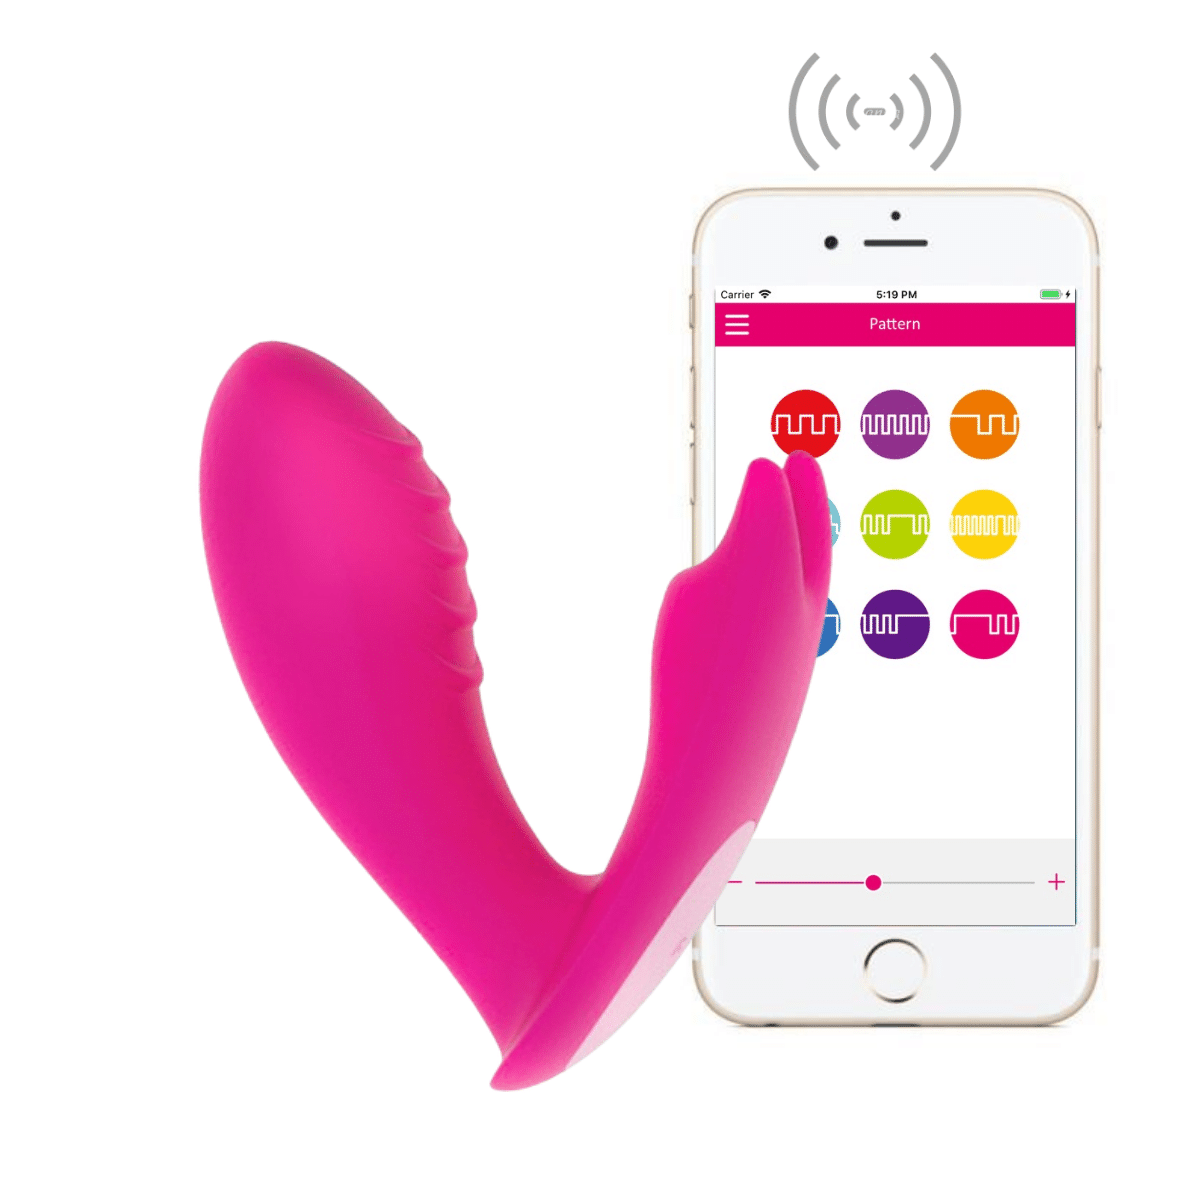 Le Eidolon | Double stimulateur vaginal et clitoridien contrôlé par smartphone